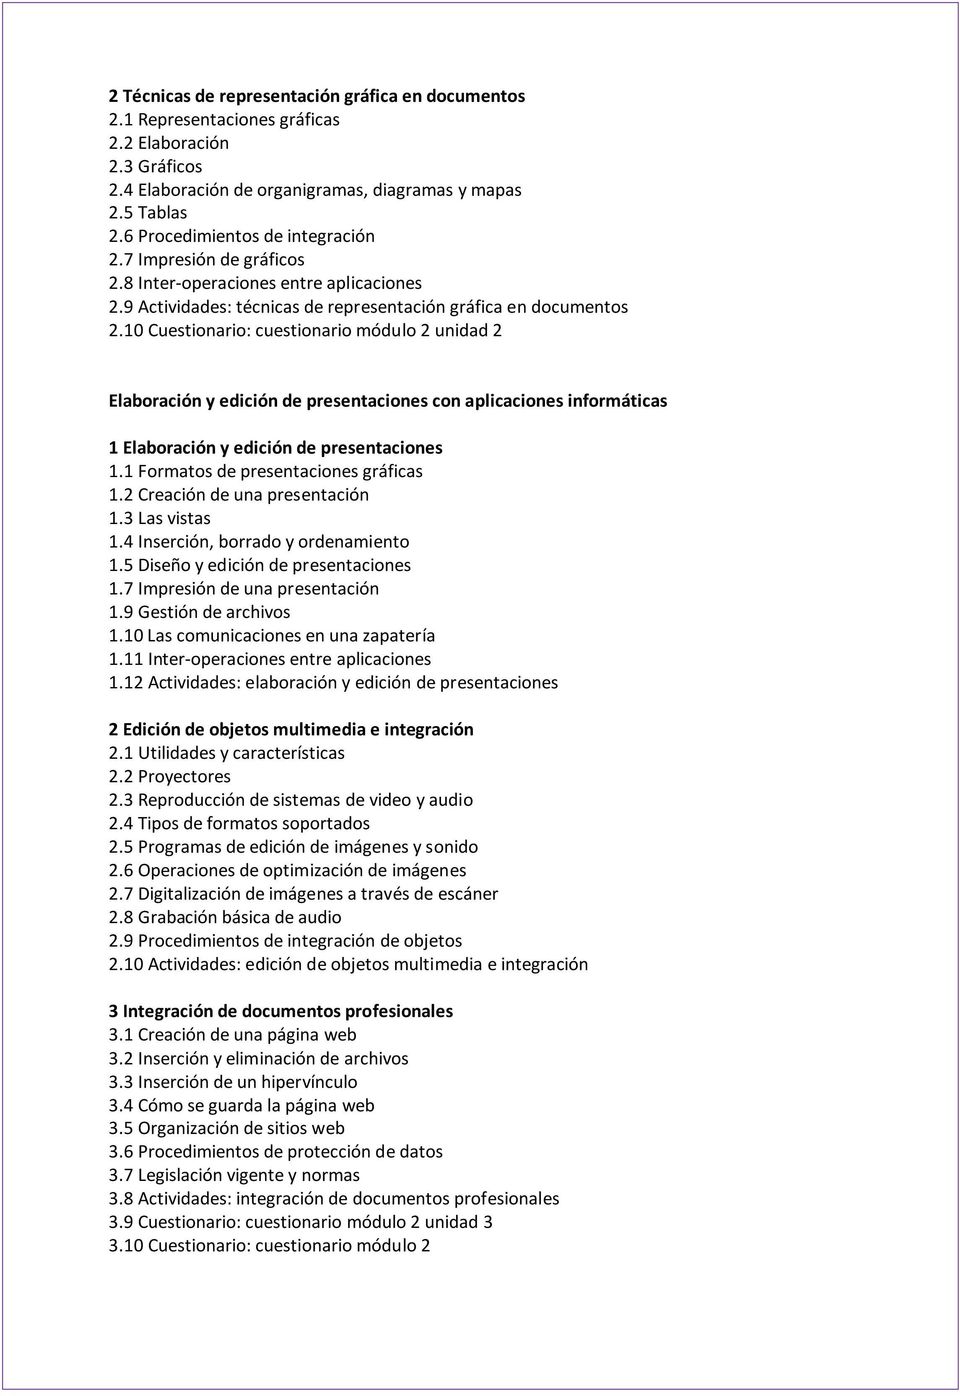 10 Cuestionario: cuestionario módulo 2 unidad 2 Elaboración y edición de presentaciones con aplicaciones informáticas 1 Elaboración y edición de presentaciones 1.